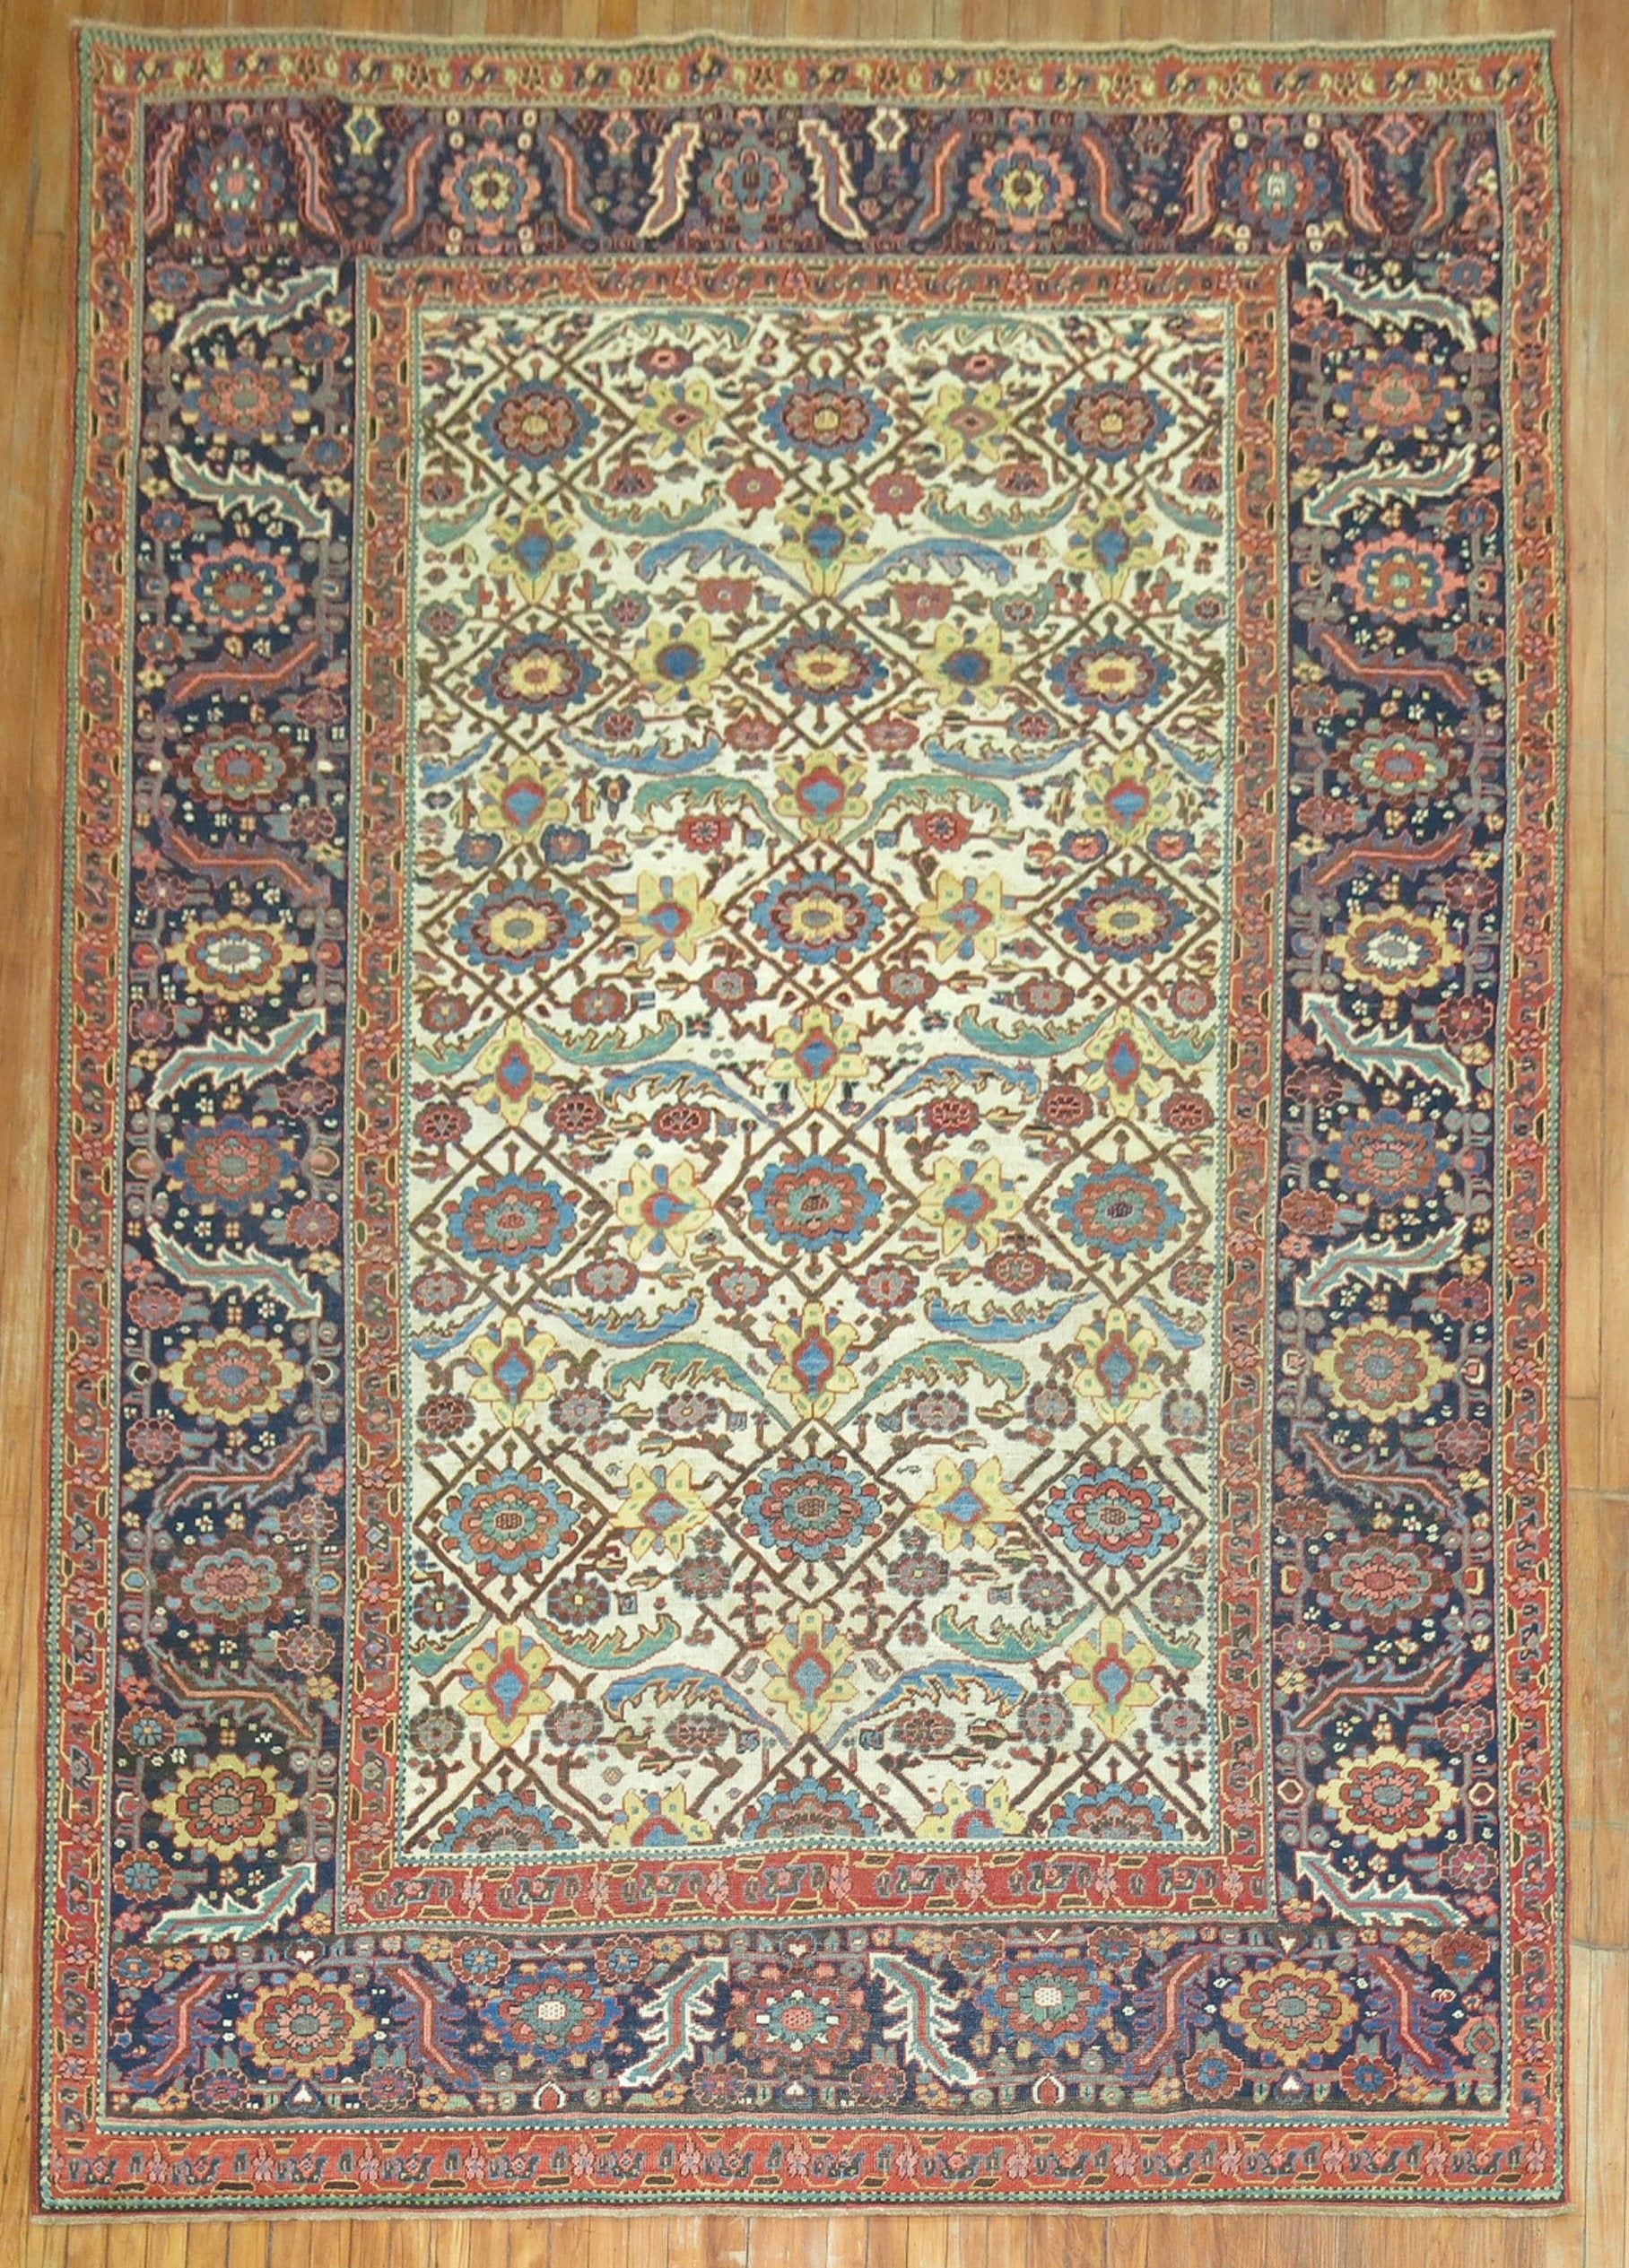 Très beau tapis de Perse du Nord-Ouest du début du 20e siècle à fond ivoire, de petite taille.

Taille 7' 6